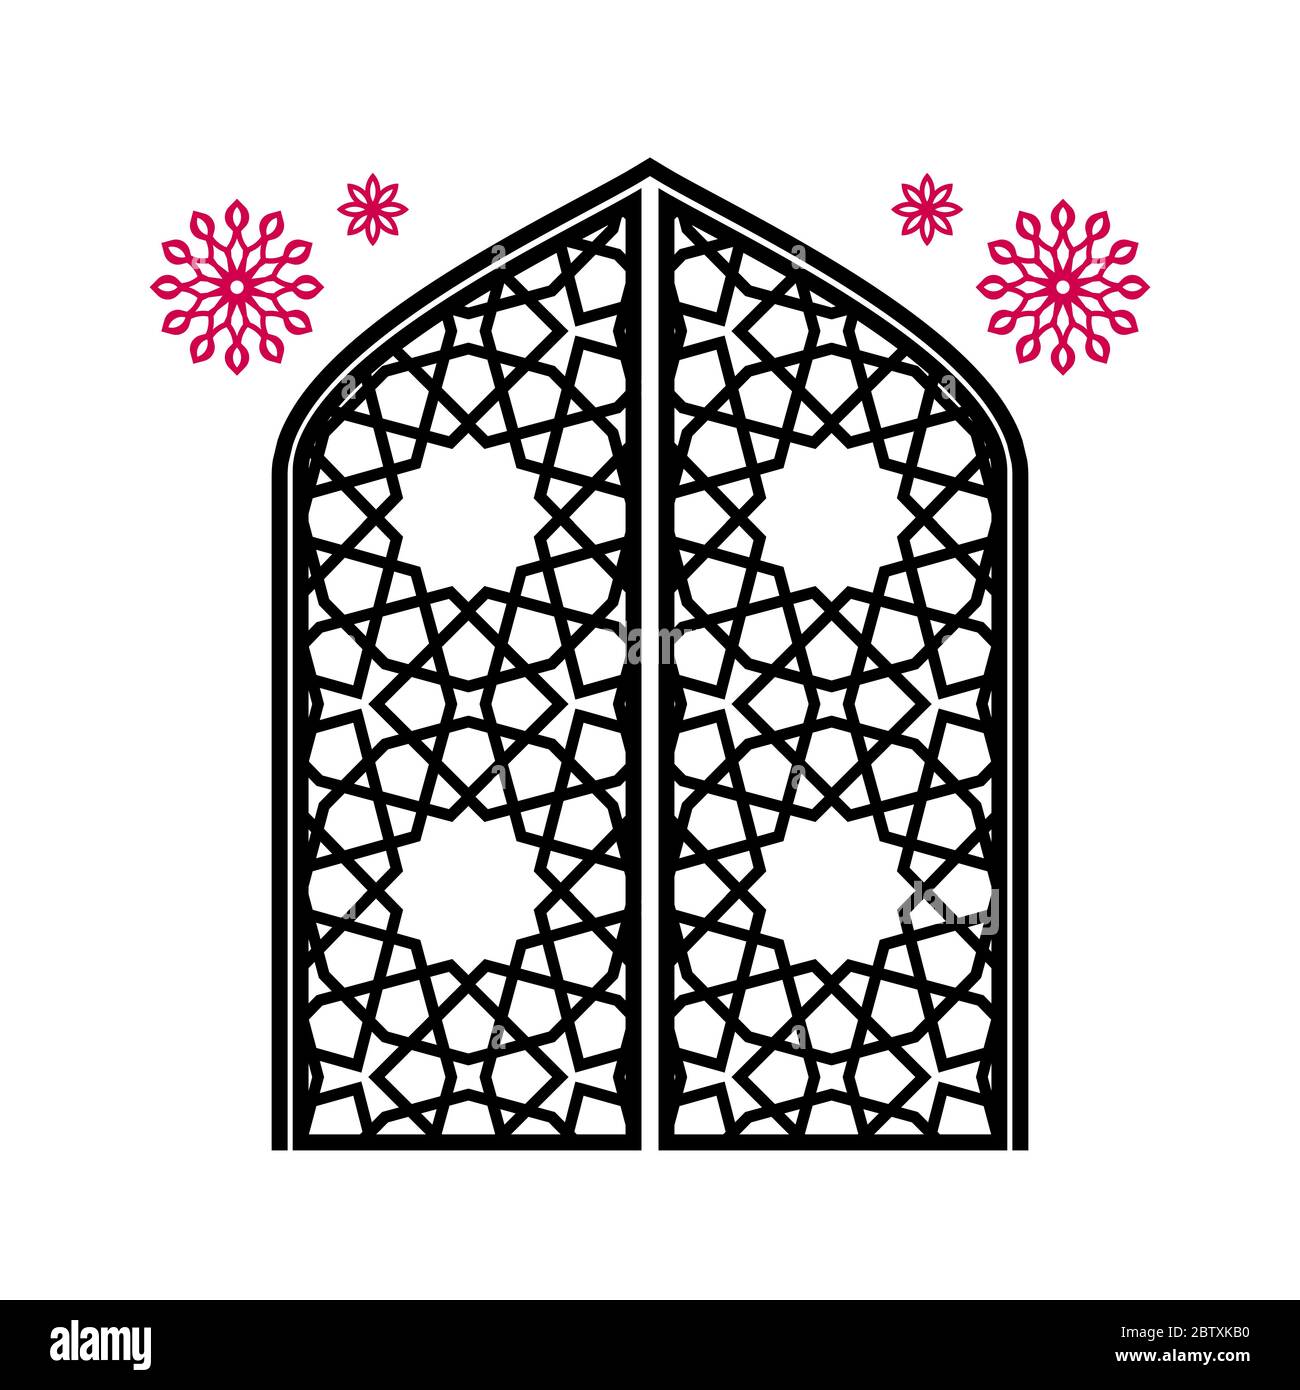 Geschlossenes Tor mit Schnitzereien, traditionelles islamisches Ornament. Isoliert auf weißem Hintergrund. Stock Vektor